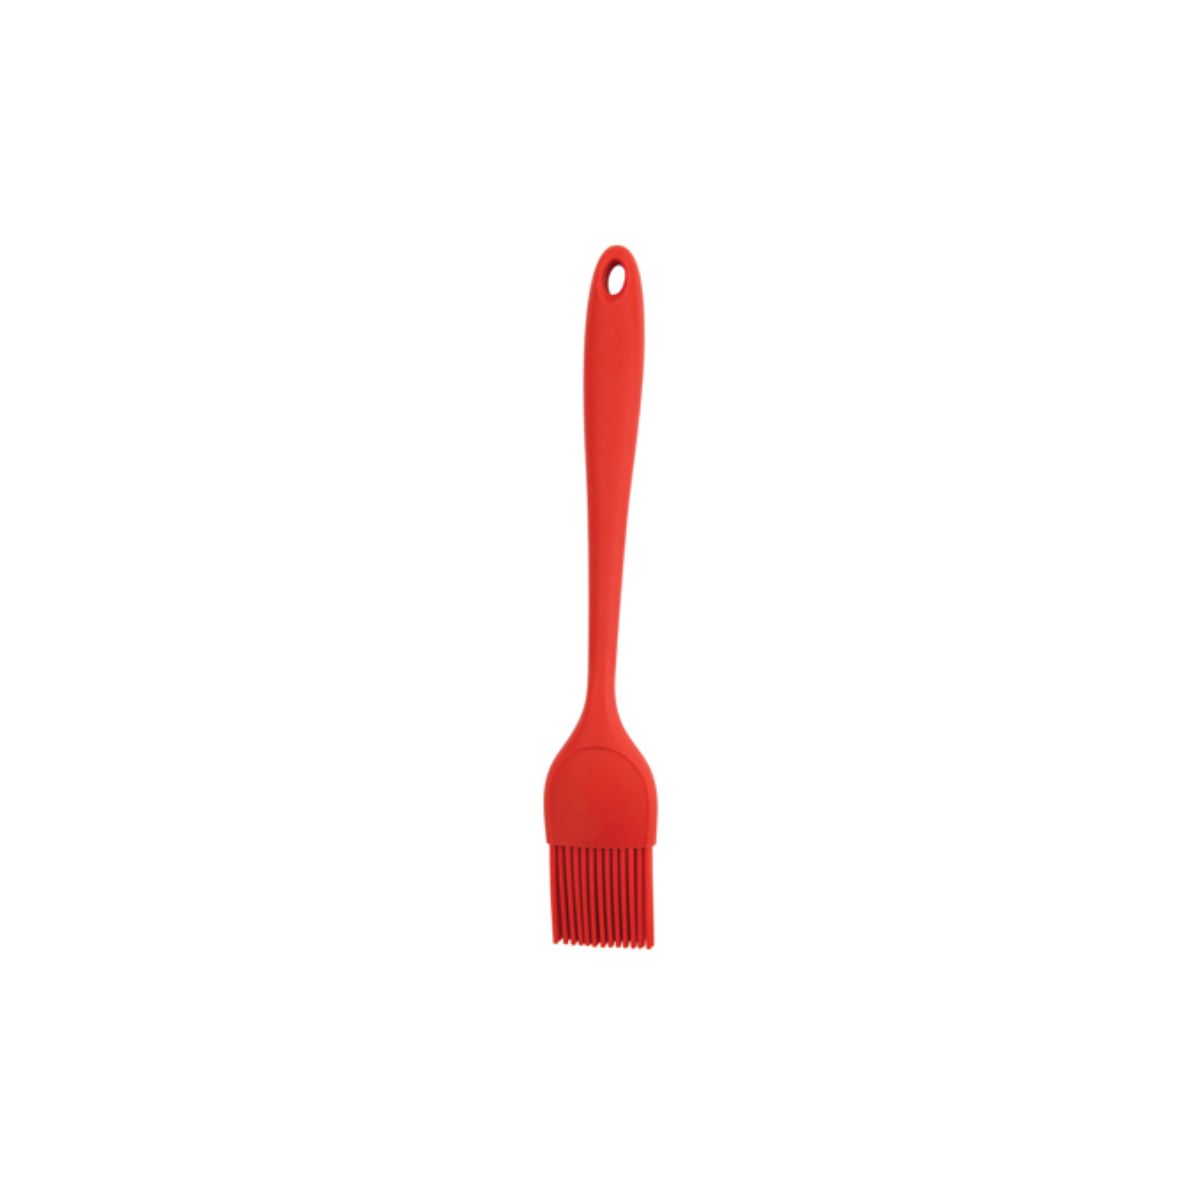 Winco Silicone Brush 1.75" Wide, Red